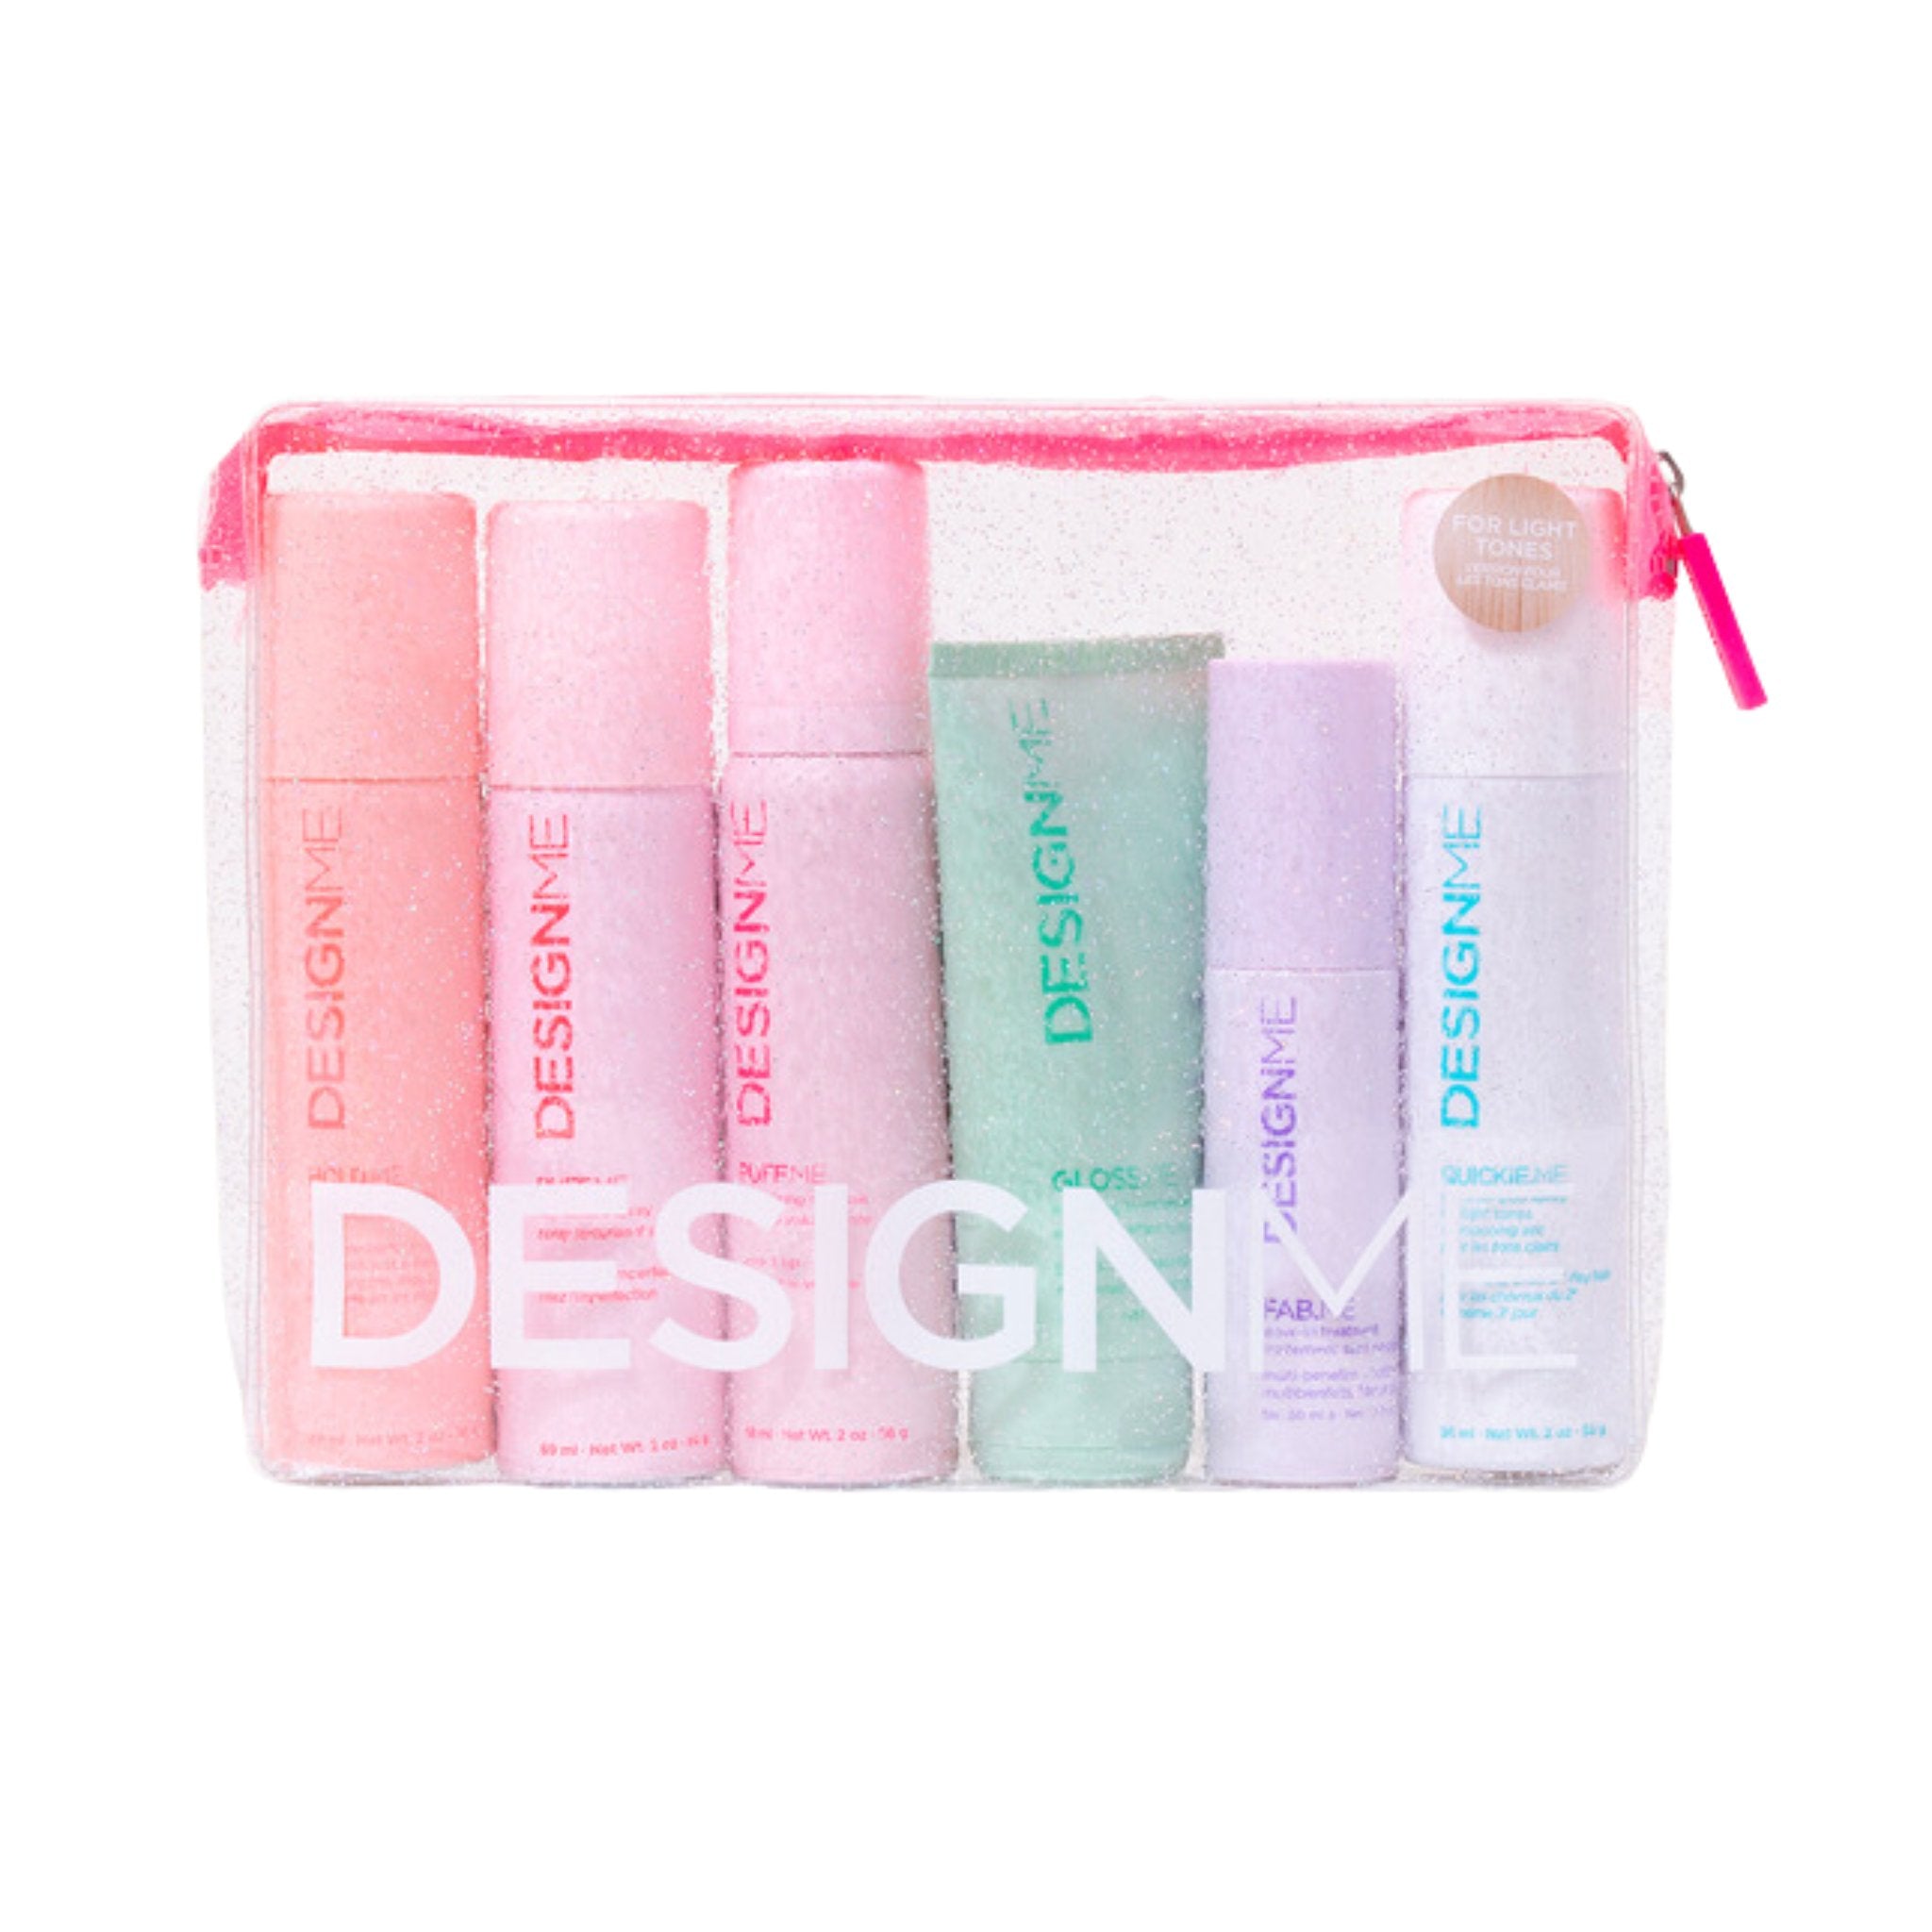 Design.me. Coffret 6 produits minis Pour Blondes - Concept C. Shop